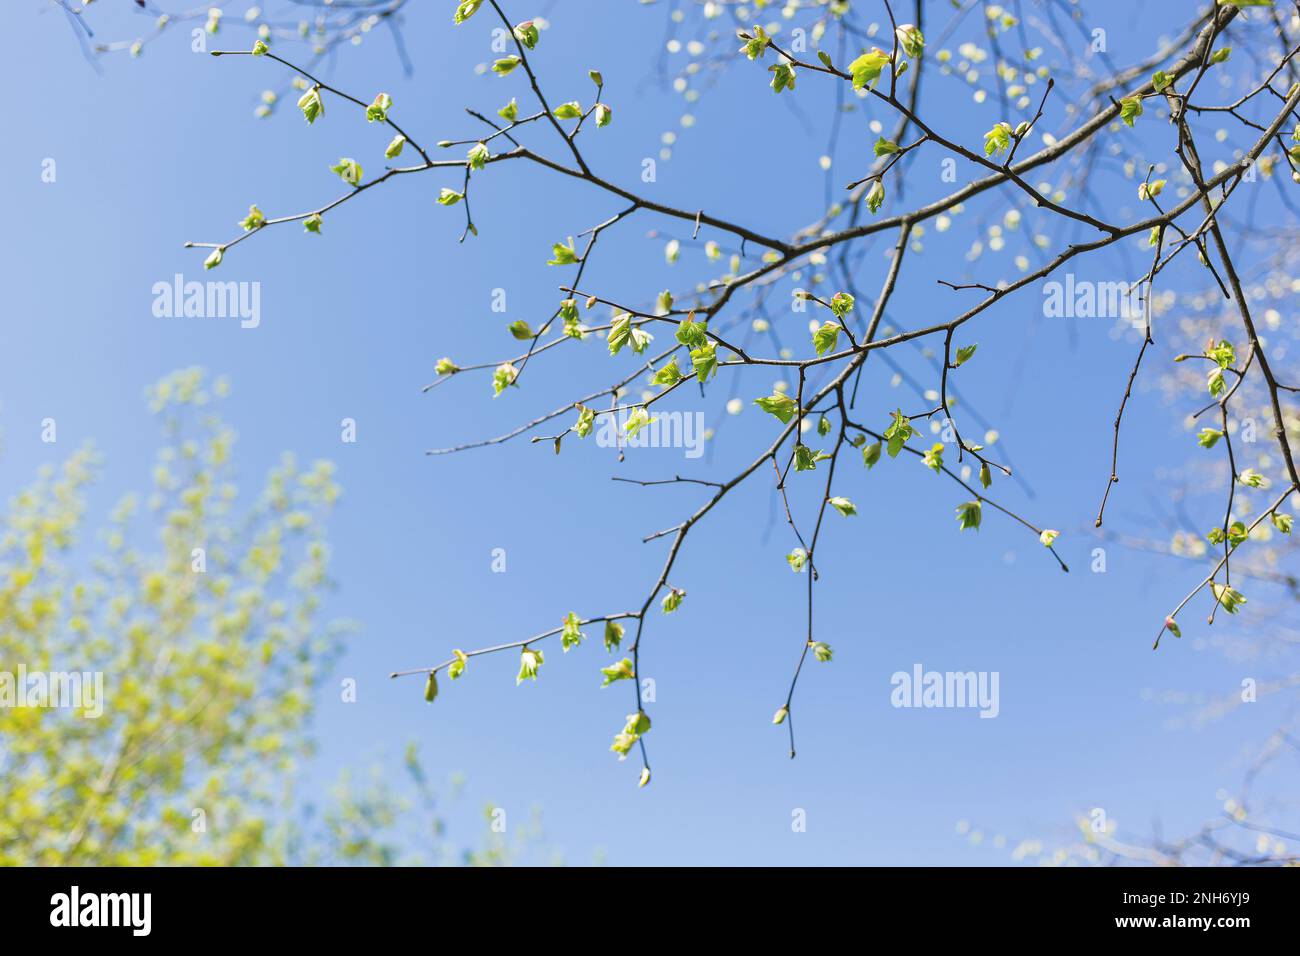 Abstrakter Frühjahrshintergrund. Äste mit grünen Knospen. Klarer blauer Himmel. Stockfoto